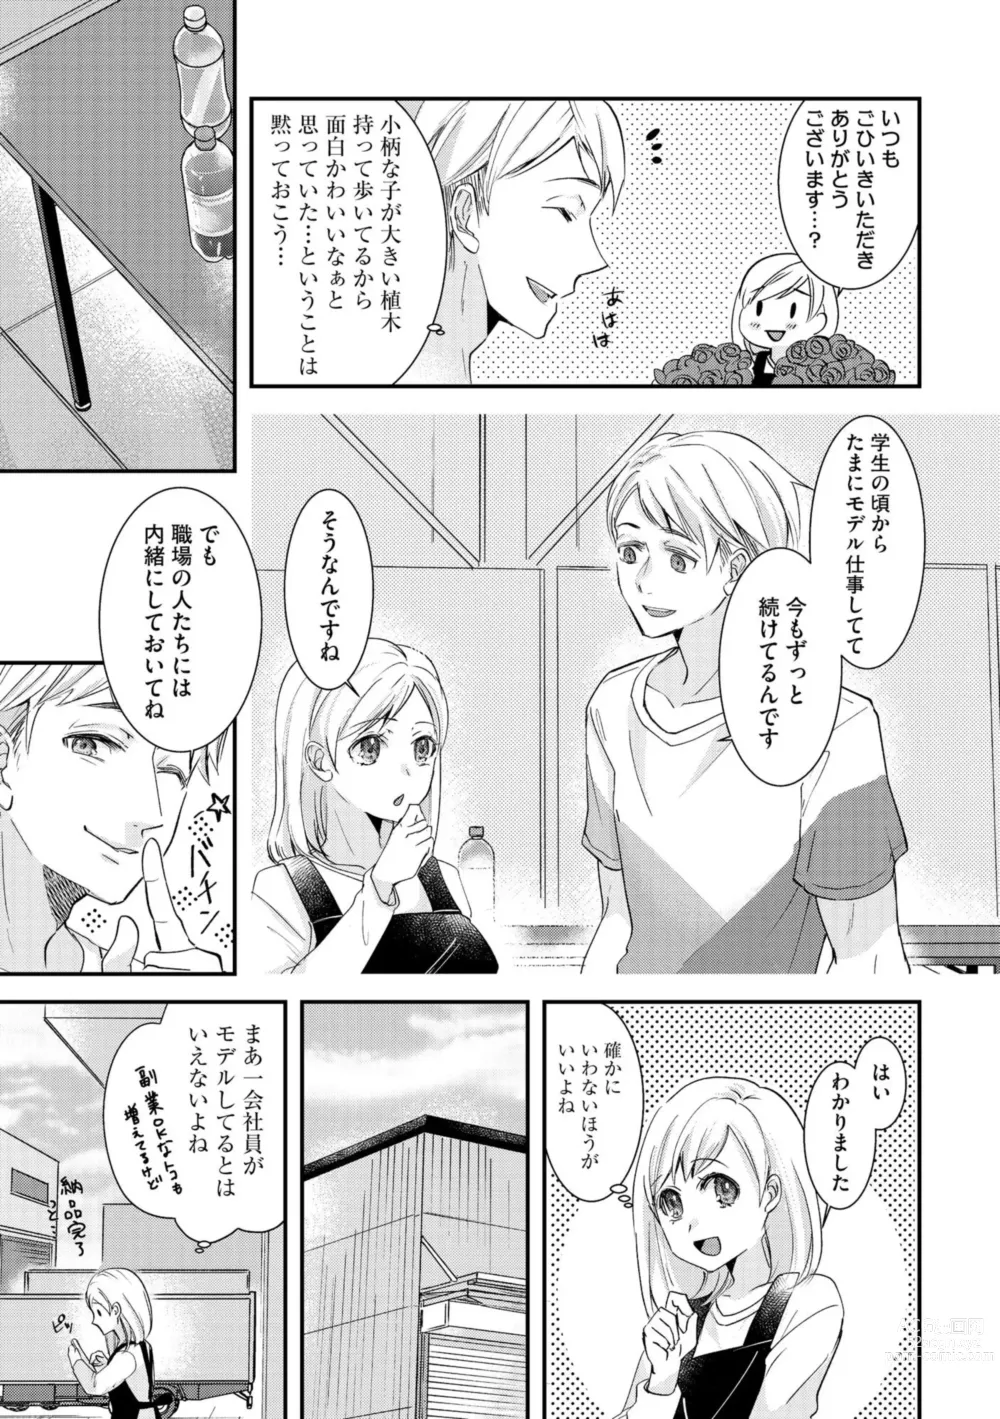 Page 7 of manga Karada Kakusa 40 cm no Amaicha Ressun XL-kyū no Okkina Are de Okumade Guriguri 1